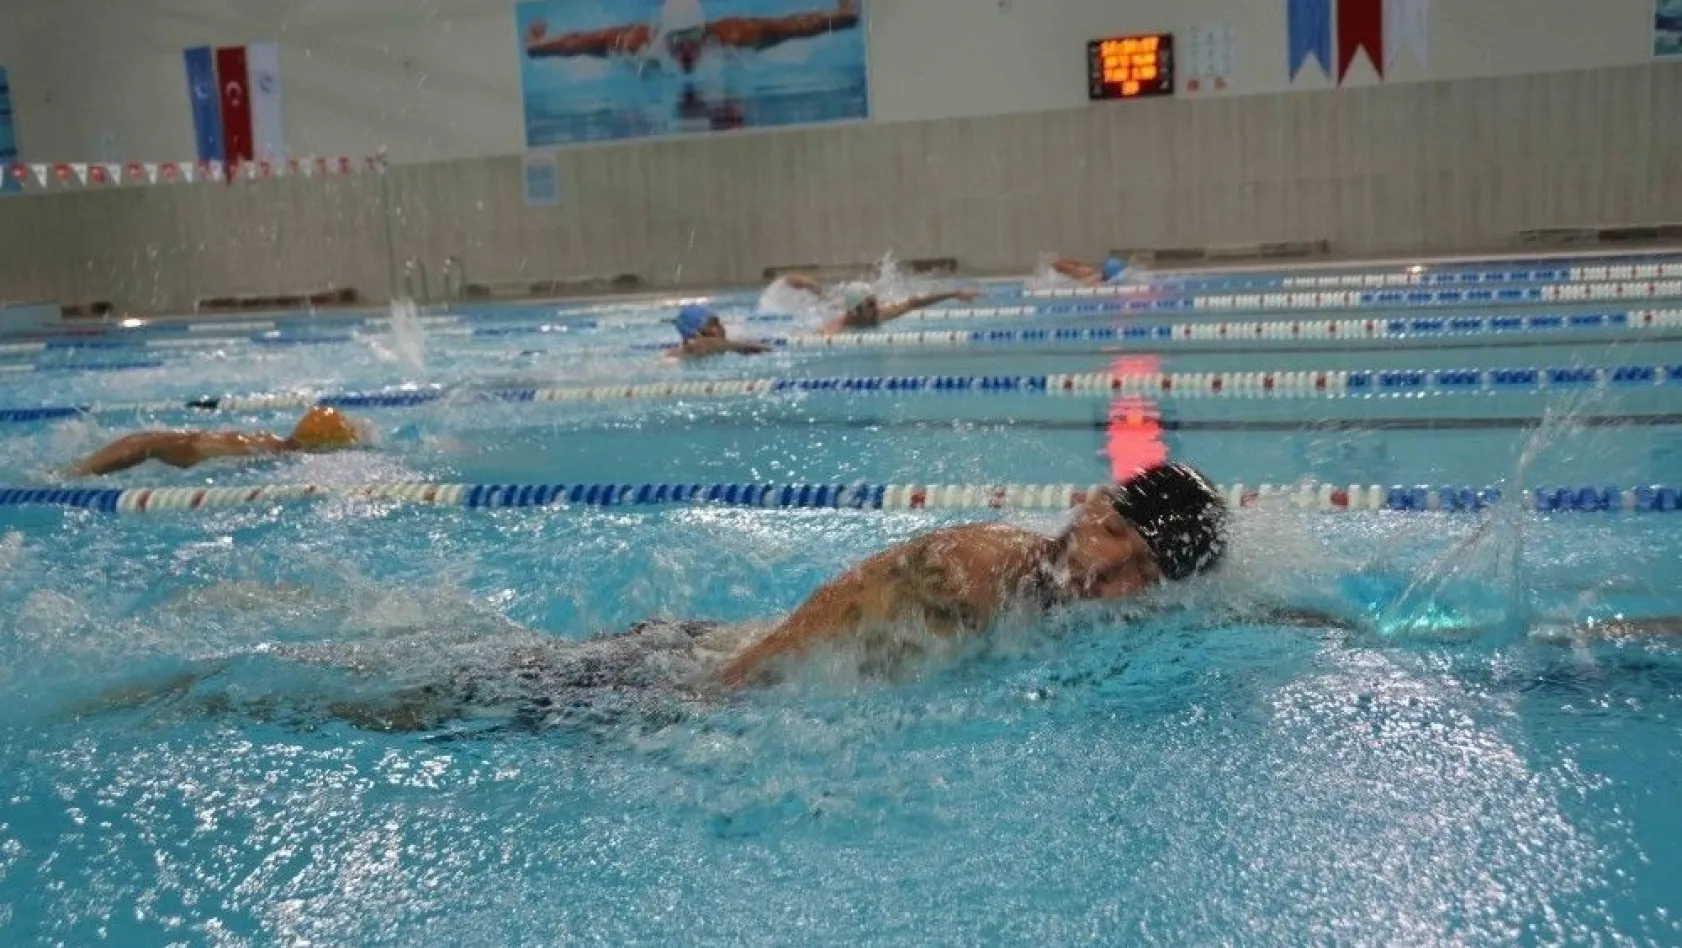 Adıyaman Üniversitesi Yarı Olimpik Yüzme Havuzu vatandaşın hizmetine açıldı
